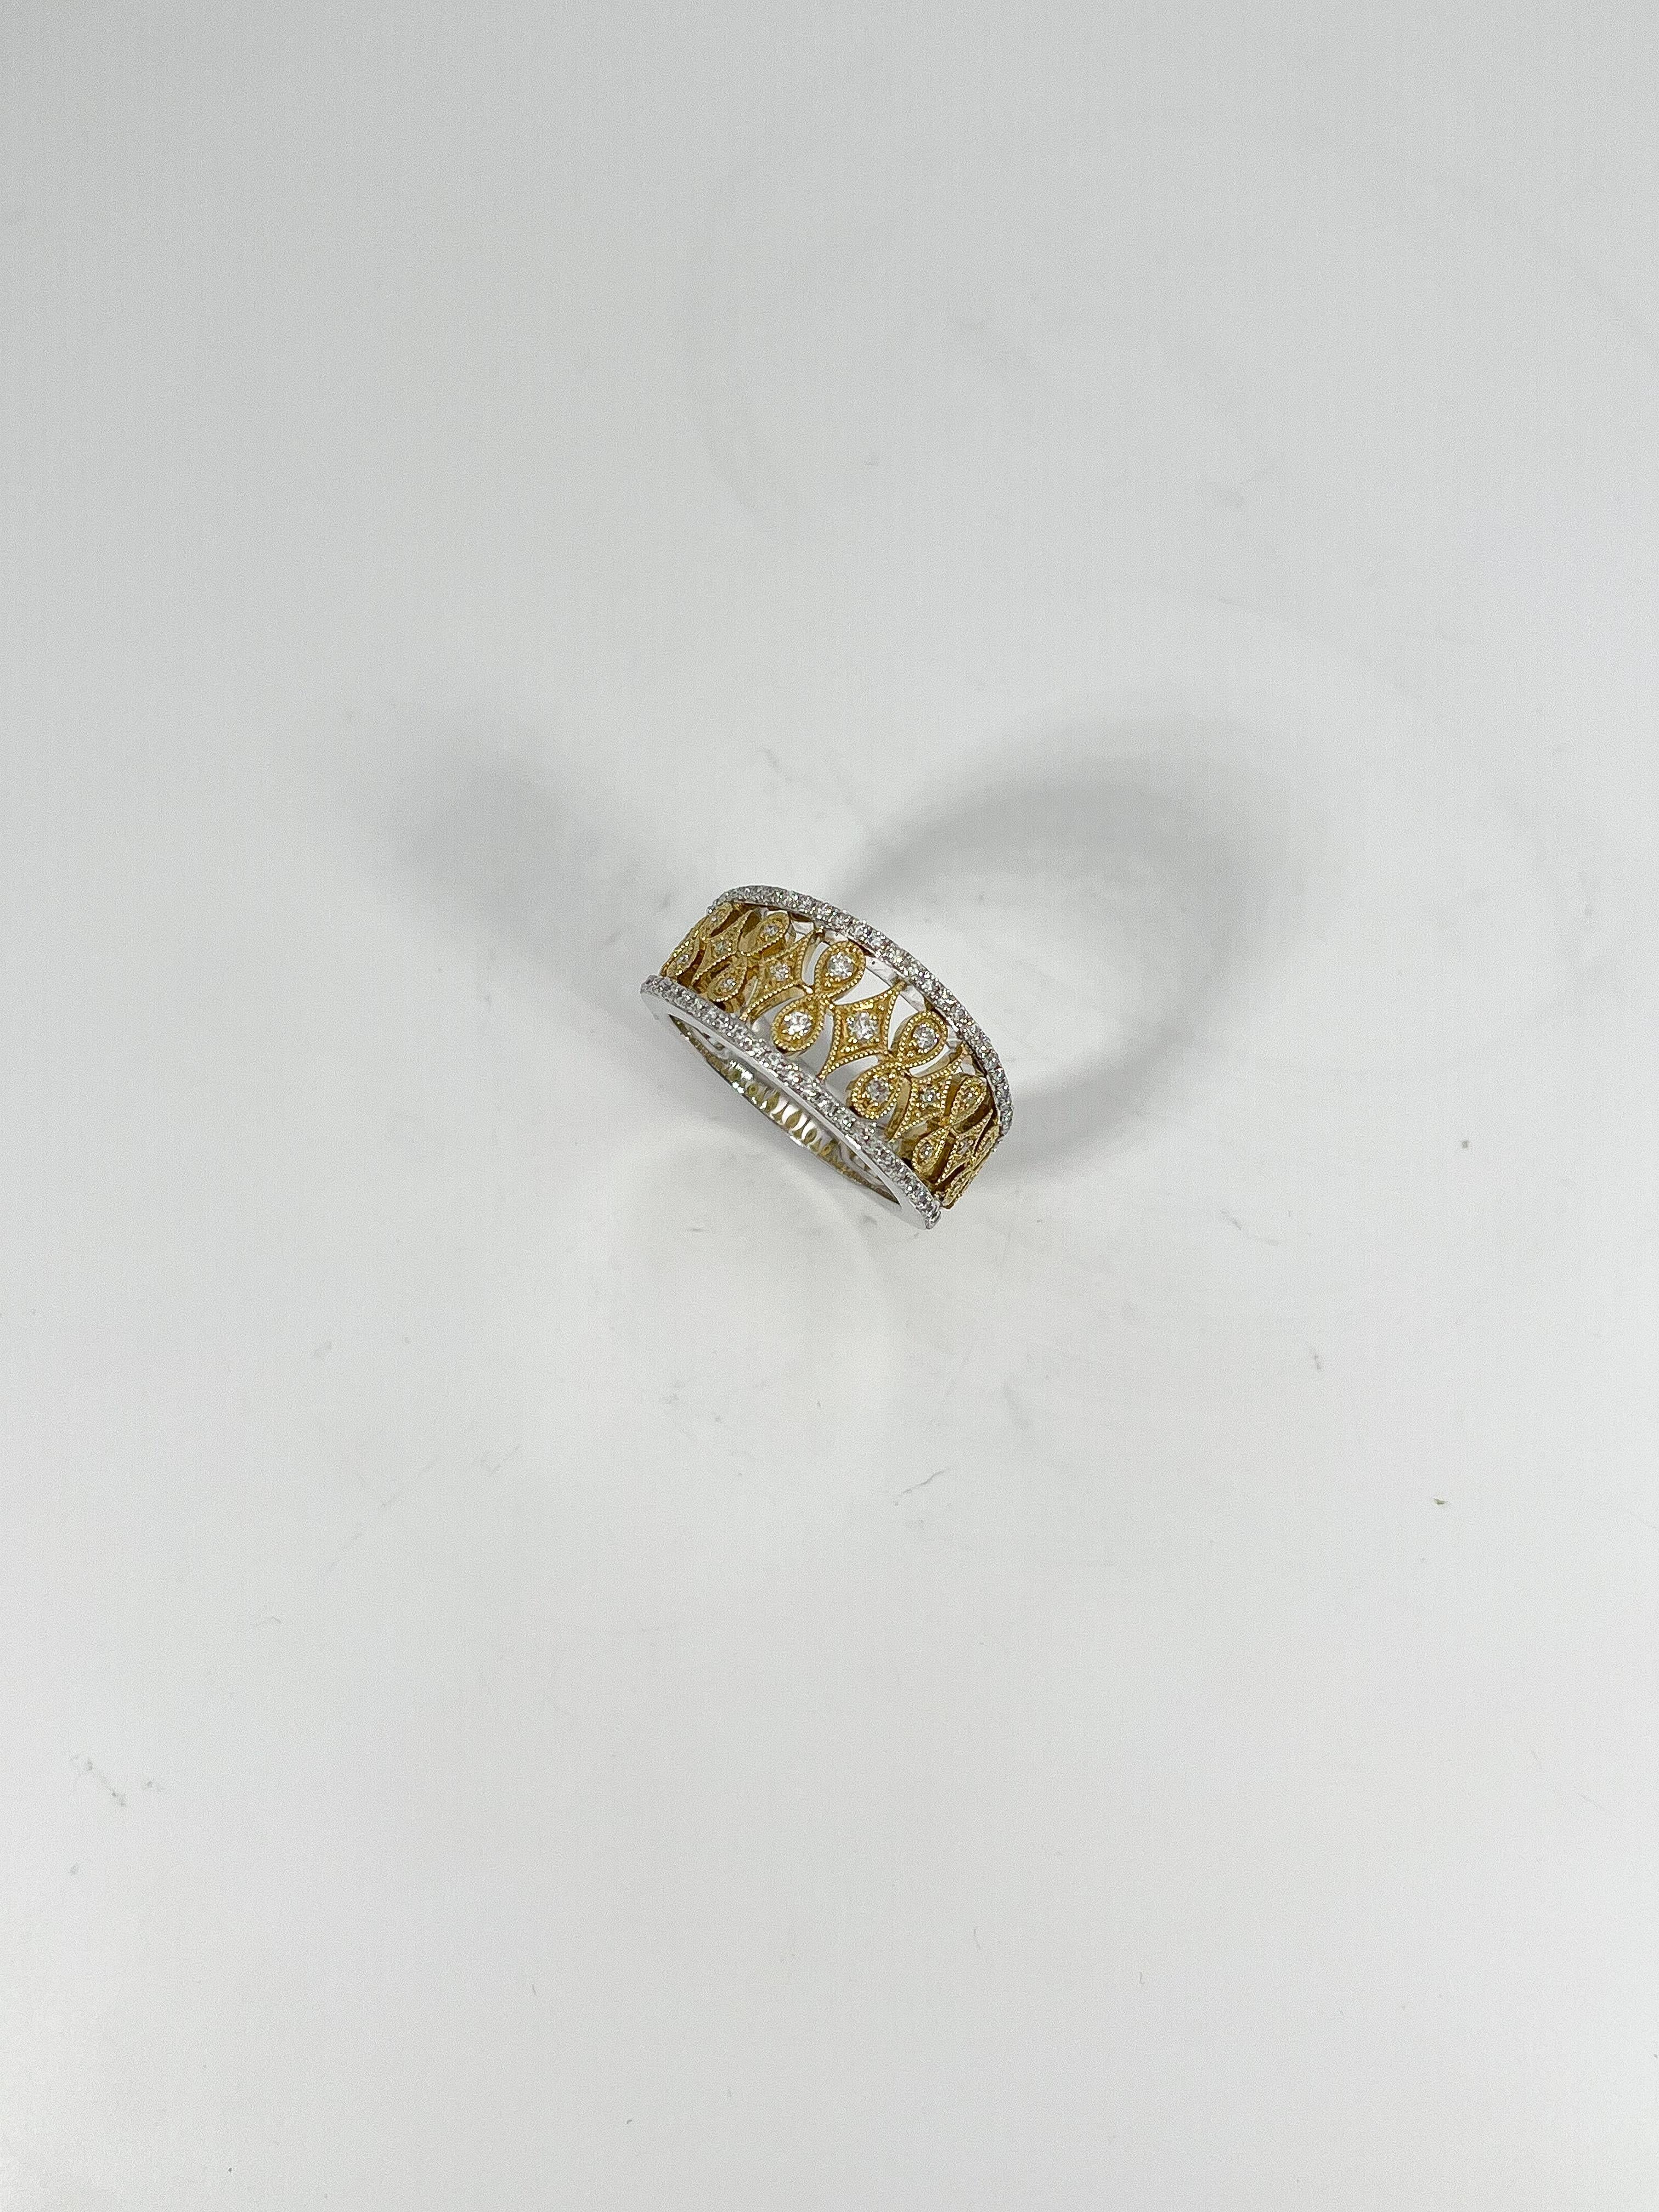 Simon G 18k .43 CTW zwei getönten Diamanten Modeband. Die Diamanten in diesem Band sind alle rund, die Breite beträgt 9,9 mm, die Größe des Rings 6 1/4 und das Gesamtgewicht 7 Gramm.
Teilenummer- LR675437